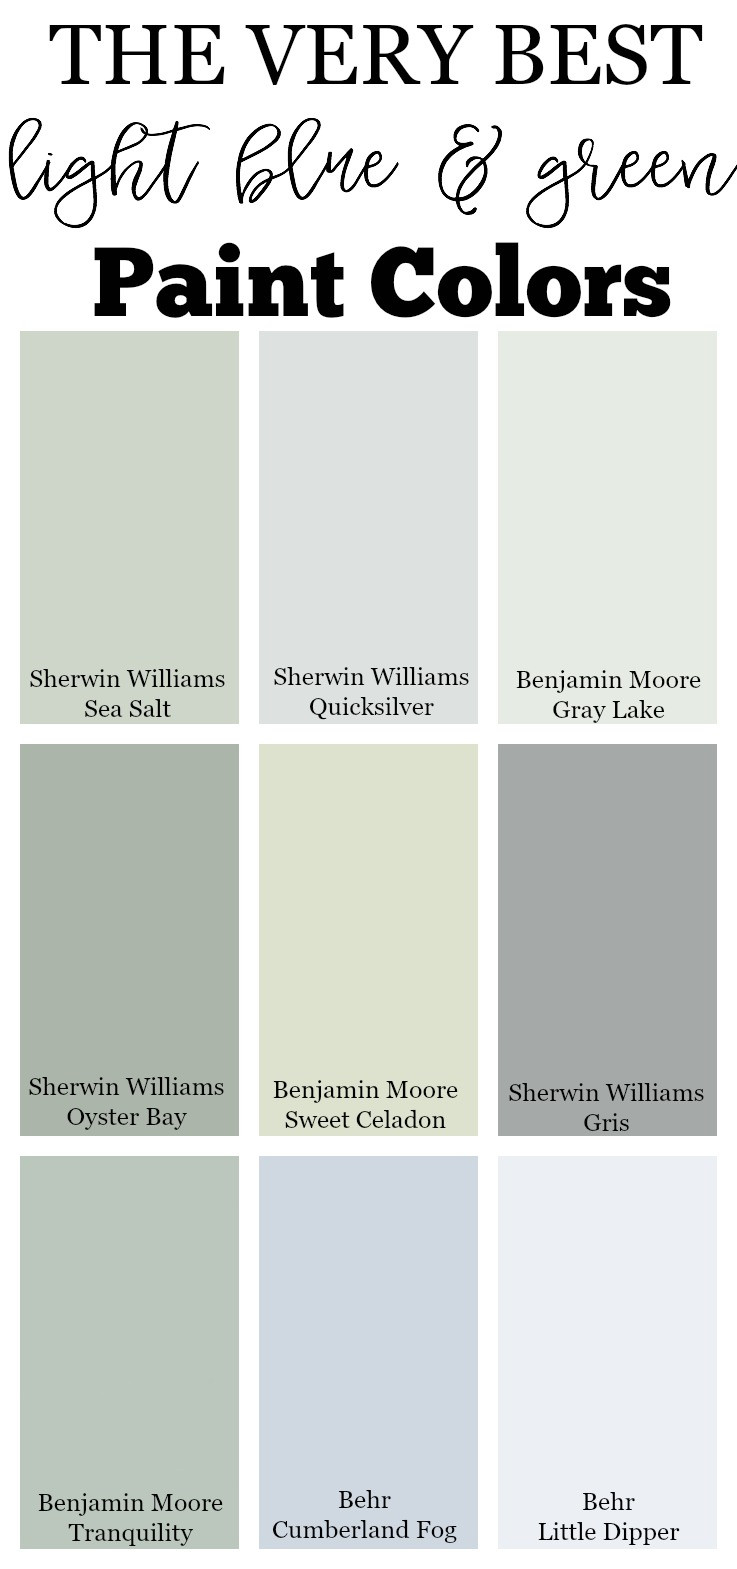 Best ideas about Best Neutral Paint Colors
. Save or Pin The Best Neutral Paint Colors for Your Home Now.